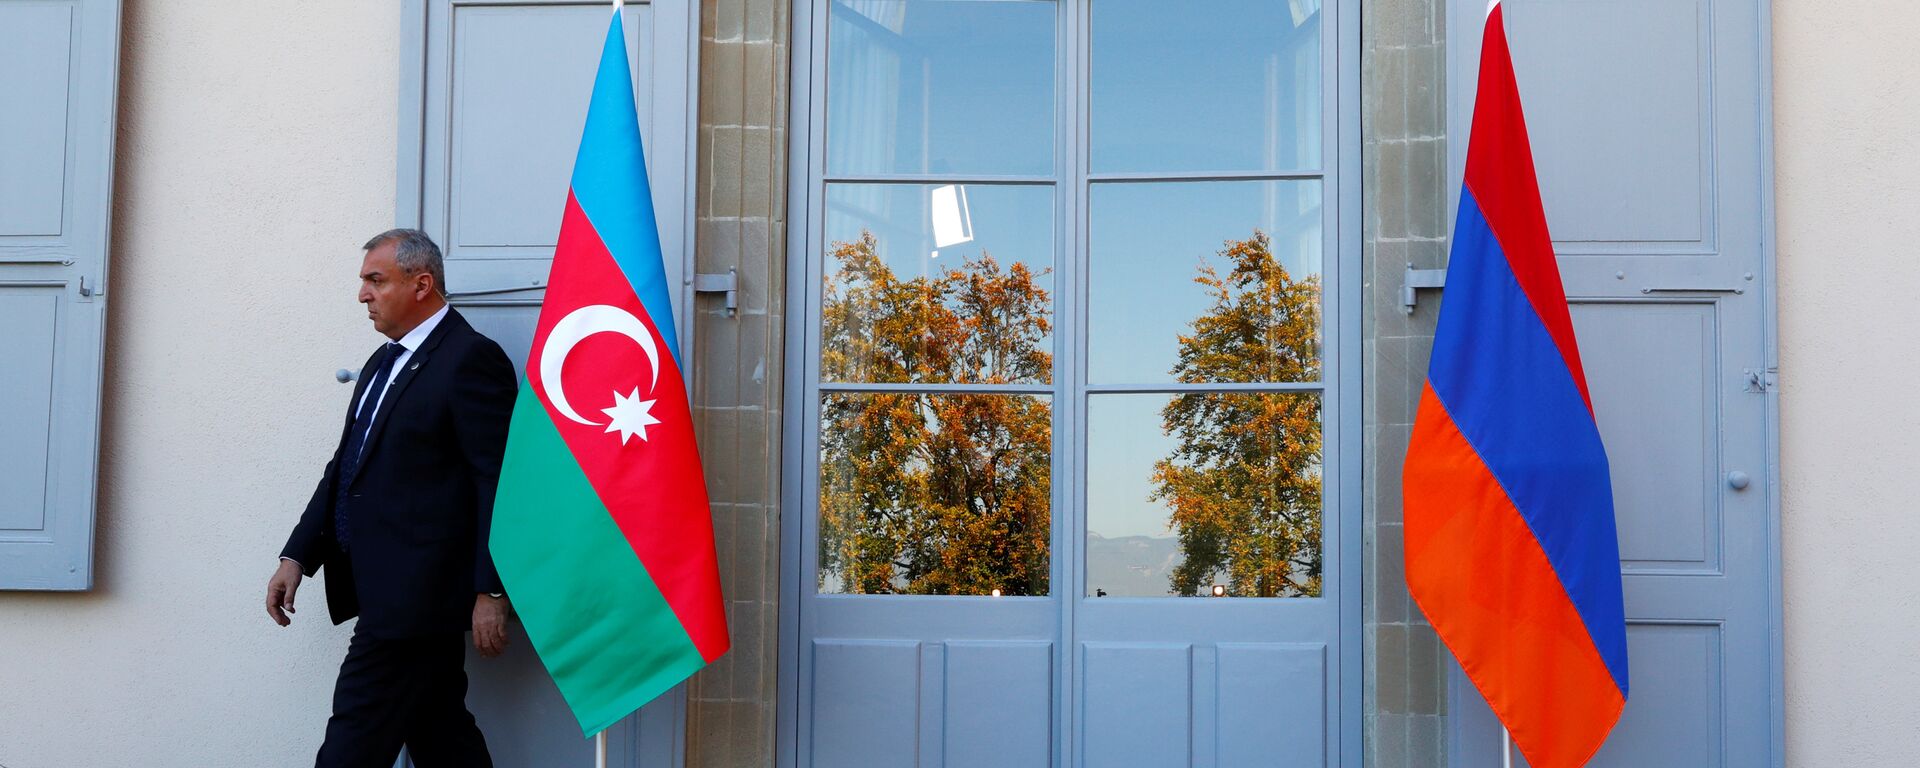 Охранник проходит мимо азербайджанского (слева) и армянского флага на открытии переговоров в Женеве, Швейцария - Sputnik Azərbaycan, 1920, 15.04.2021